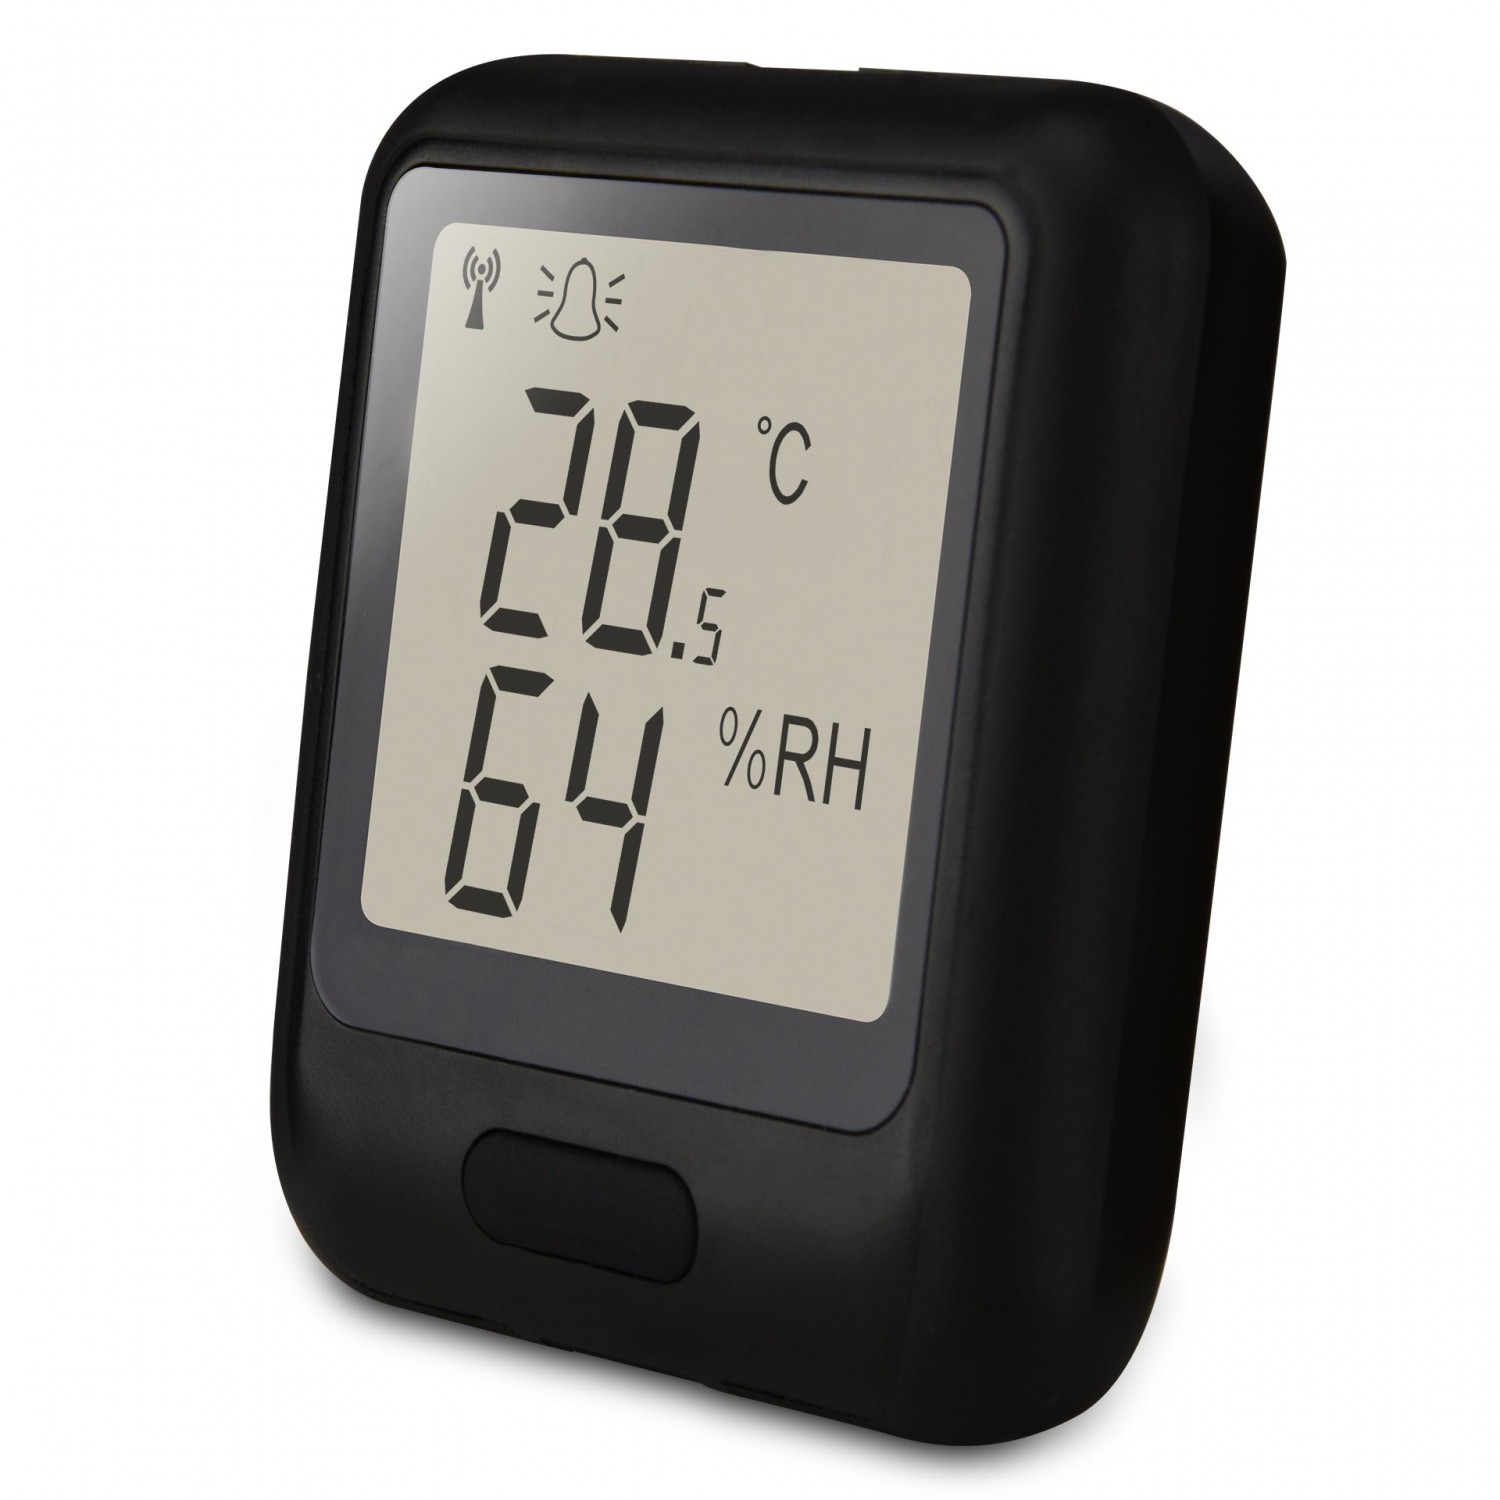 Registrador de temperatura y Humedad Relativa con sensor interno por WIFI de precisión. Rango: -20 a 60°C y 0 a 100%Hr; . Software gratuito en inglés EL-WIFI-WIN.